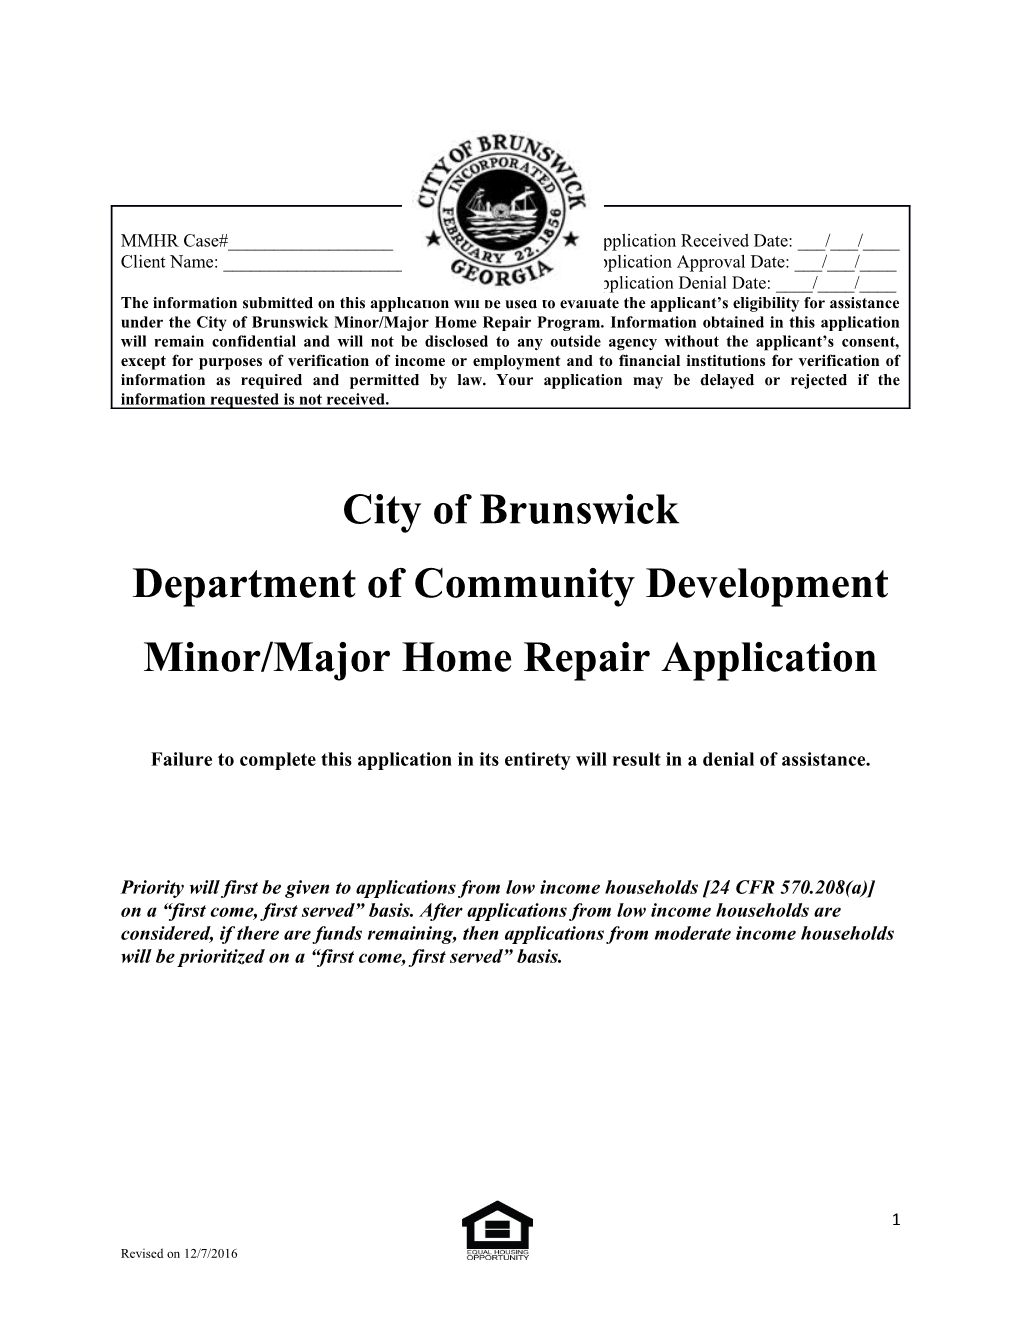 Minor/Major Home Repair Application